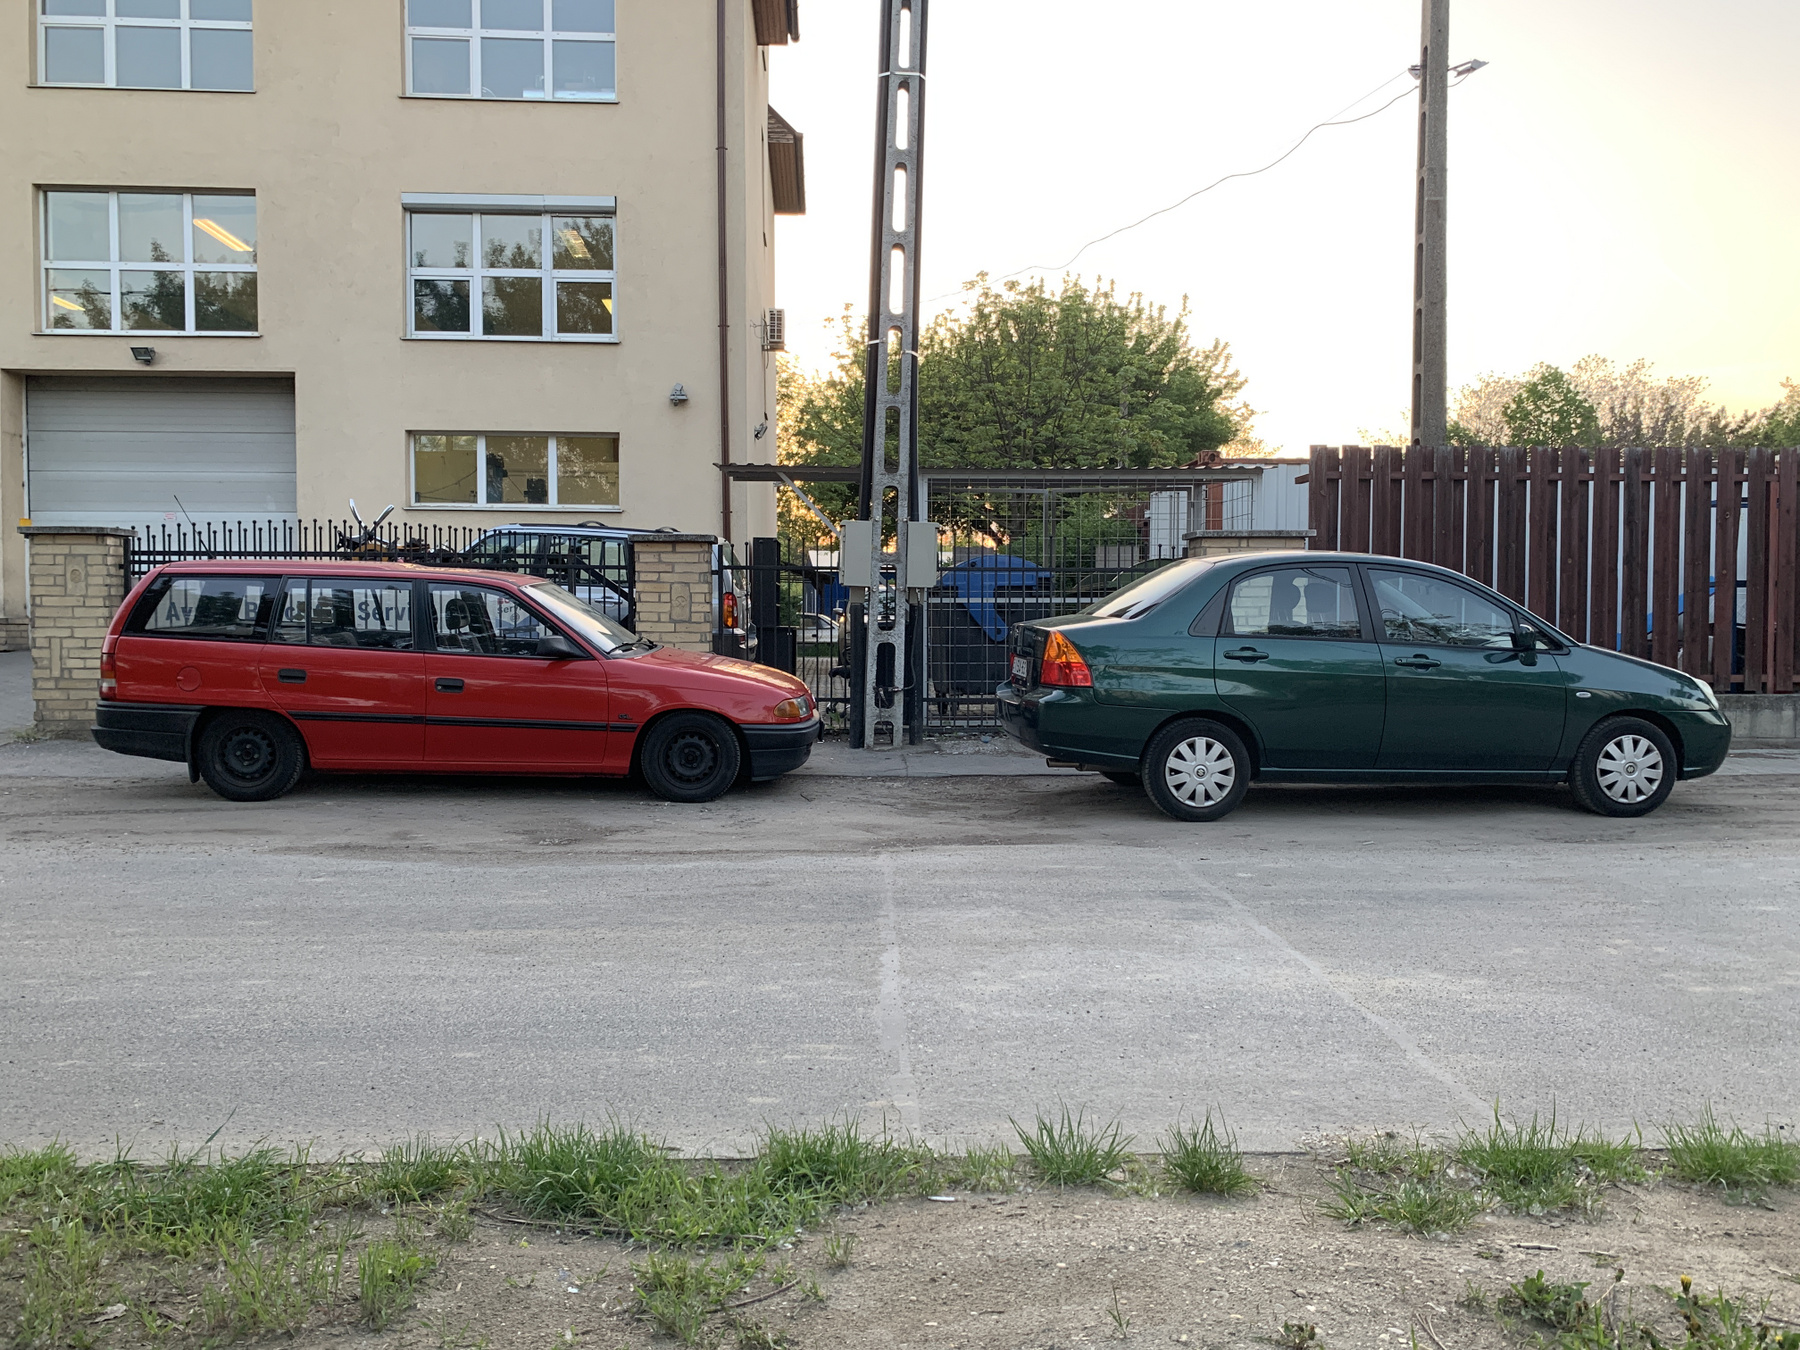 Kollégákkal a garázsban: Nyegli Berlingója és Ákos VFR-je őrzik épp